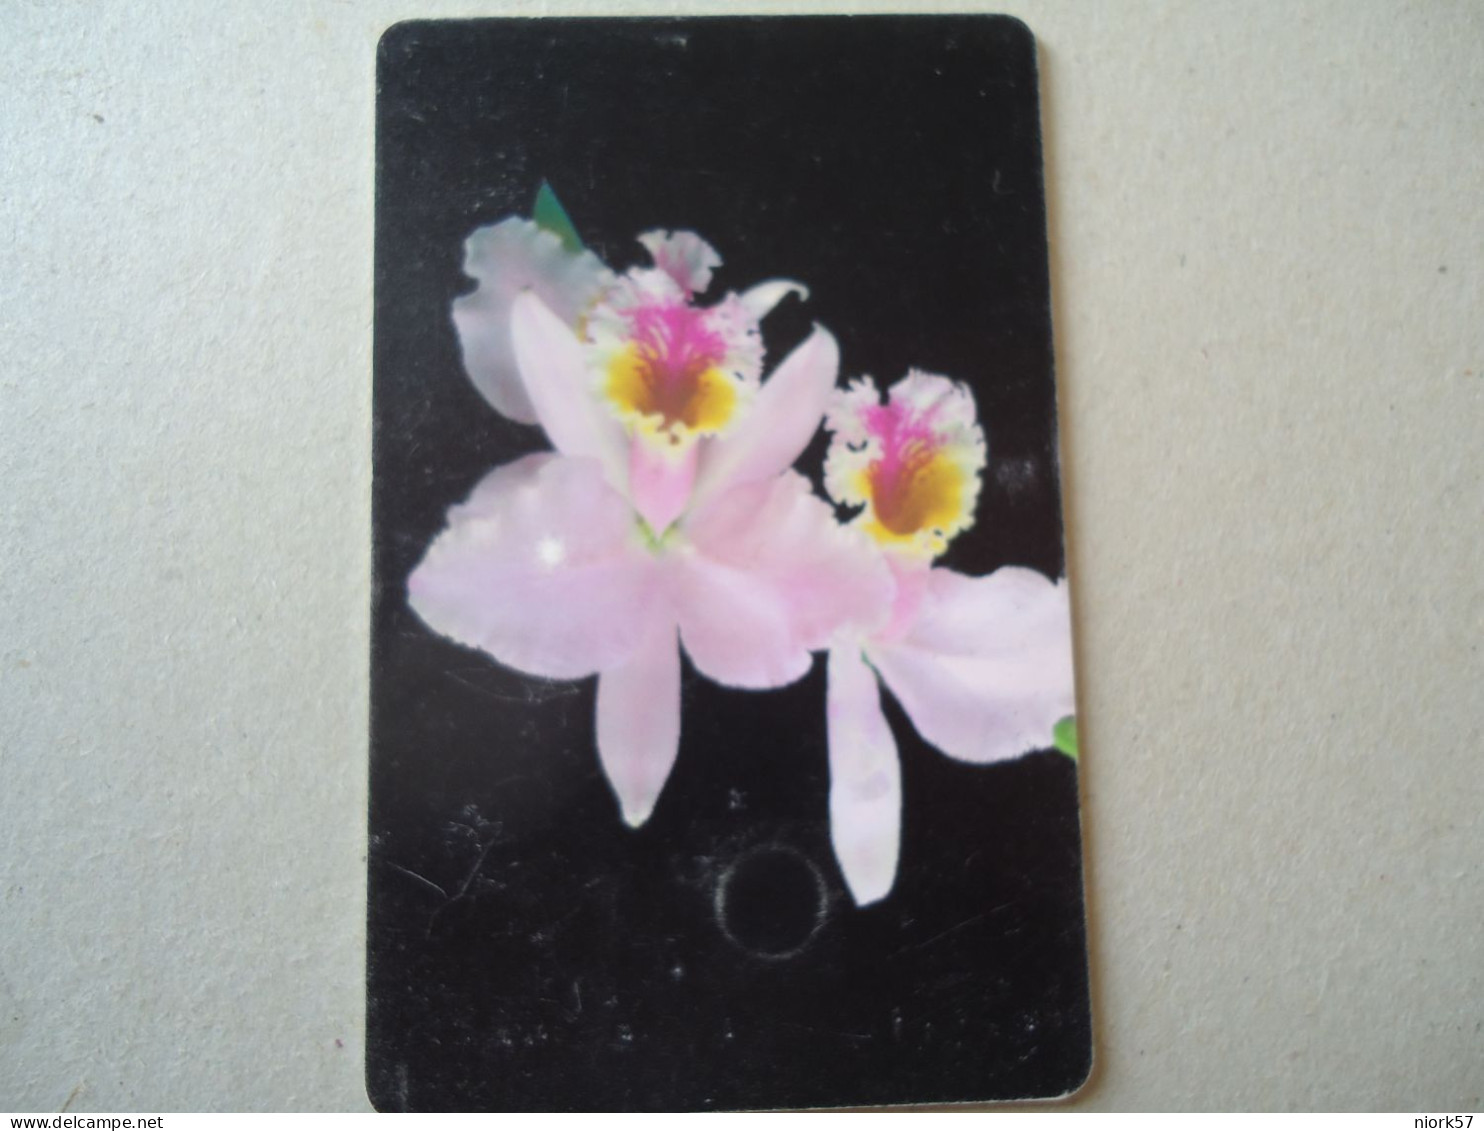 VENEZUELA USED CARDS FLOWERS ORCHIDS - Fleurs